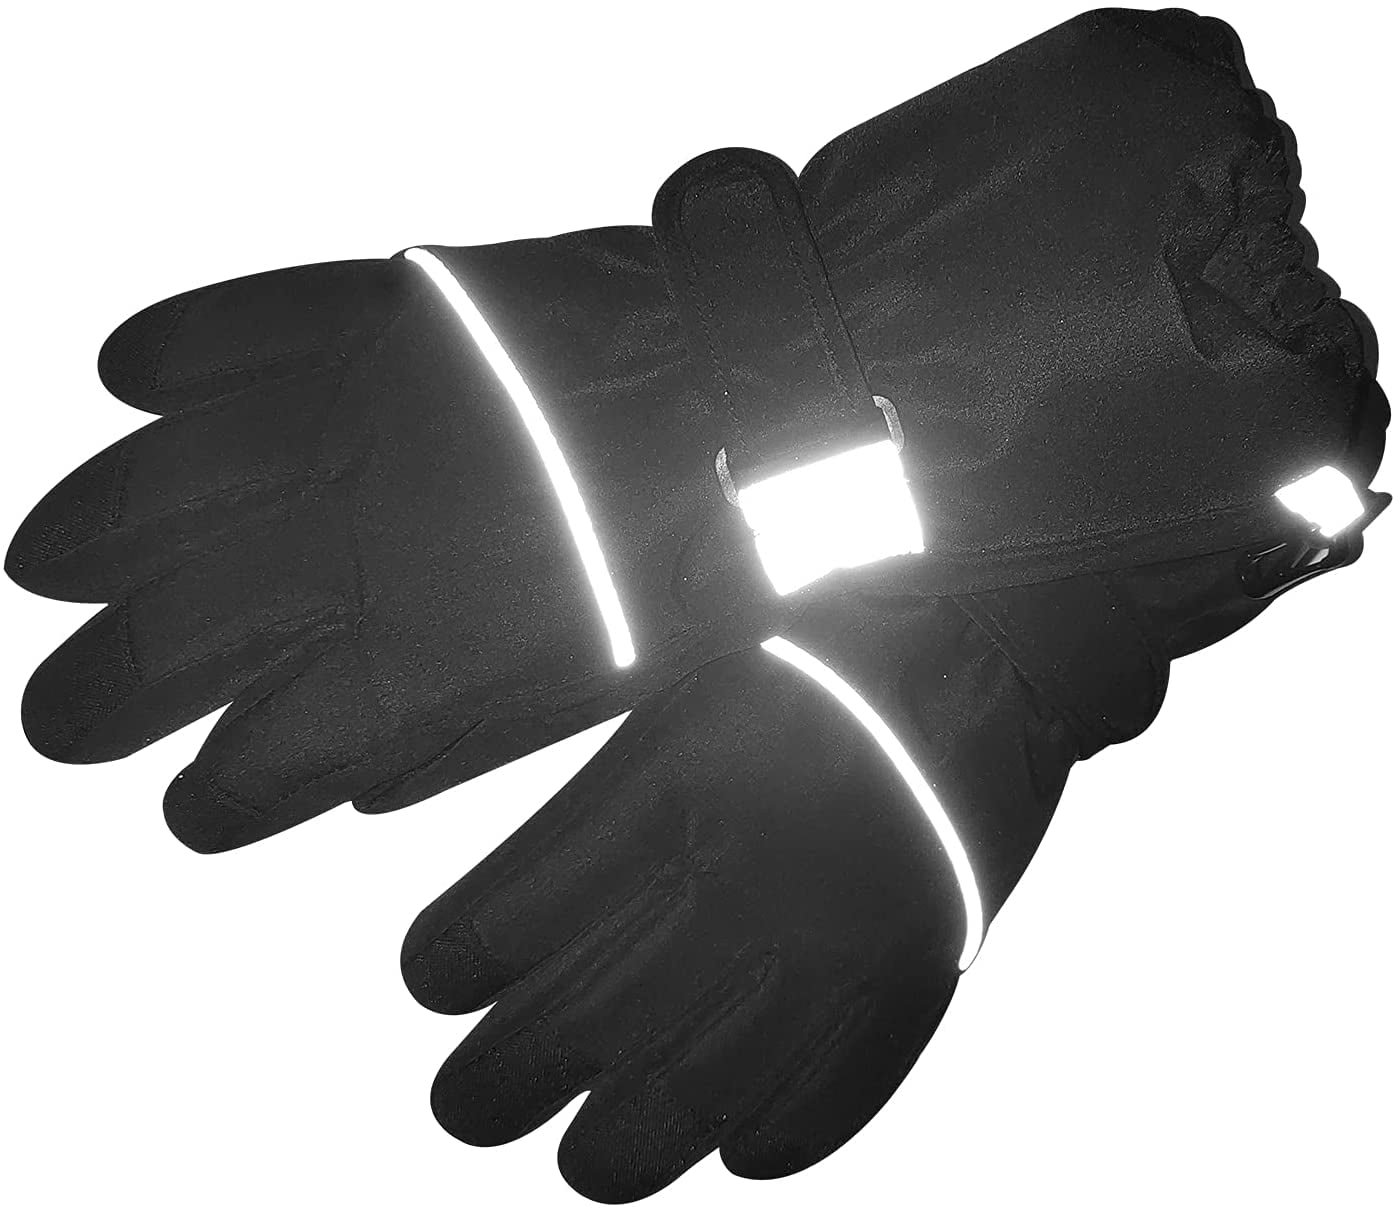 waterproof windproof With Fleece Lining for boys girls Kids winter warm ski gloves S 